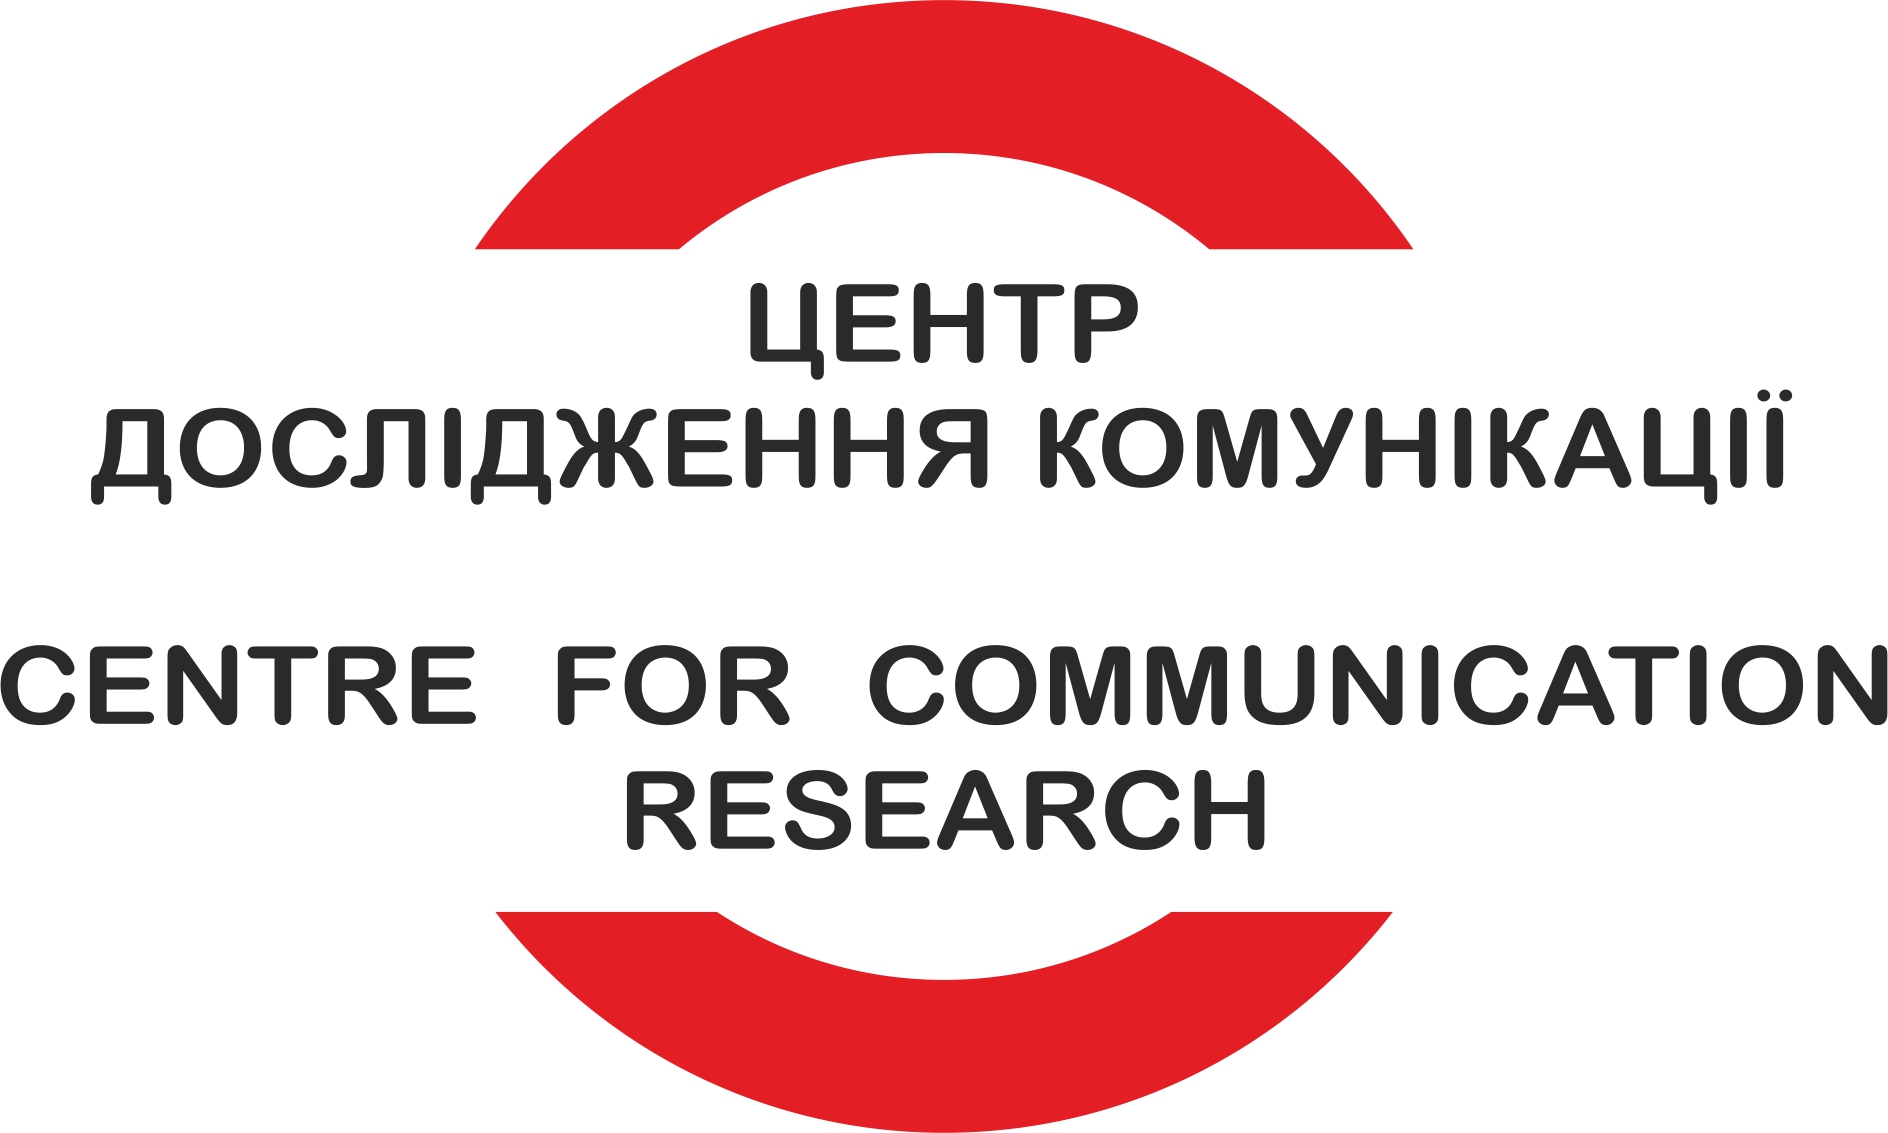 Центр дослідження комунікації